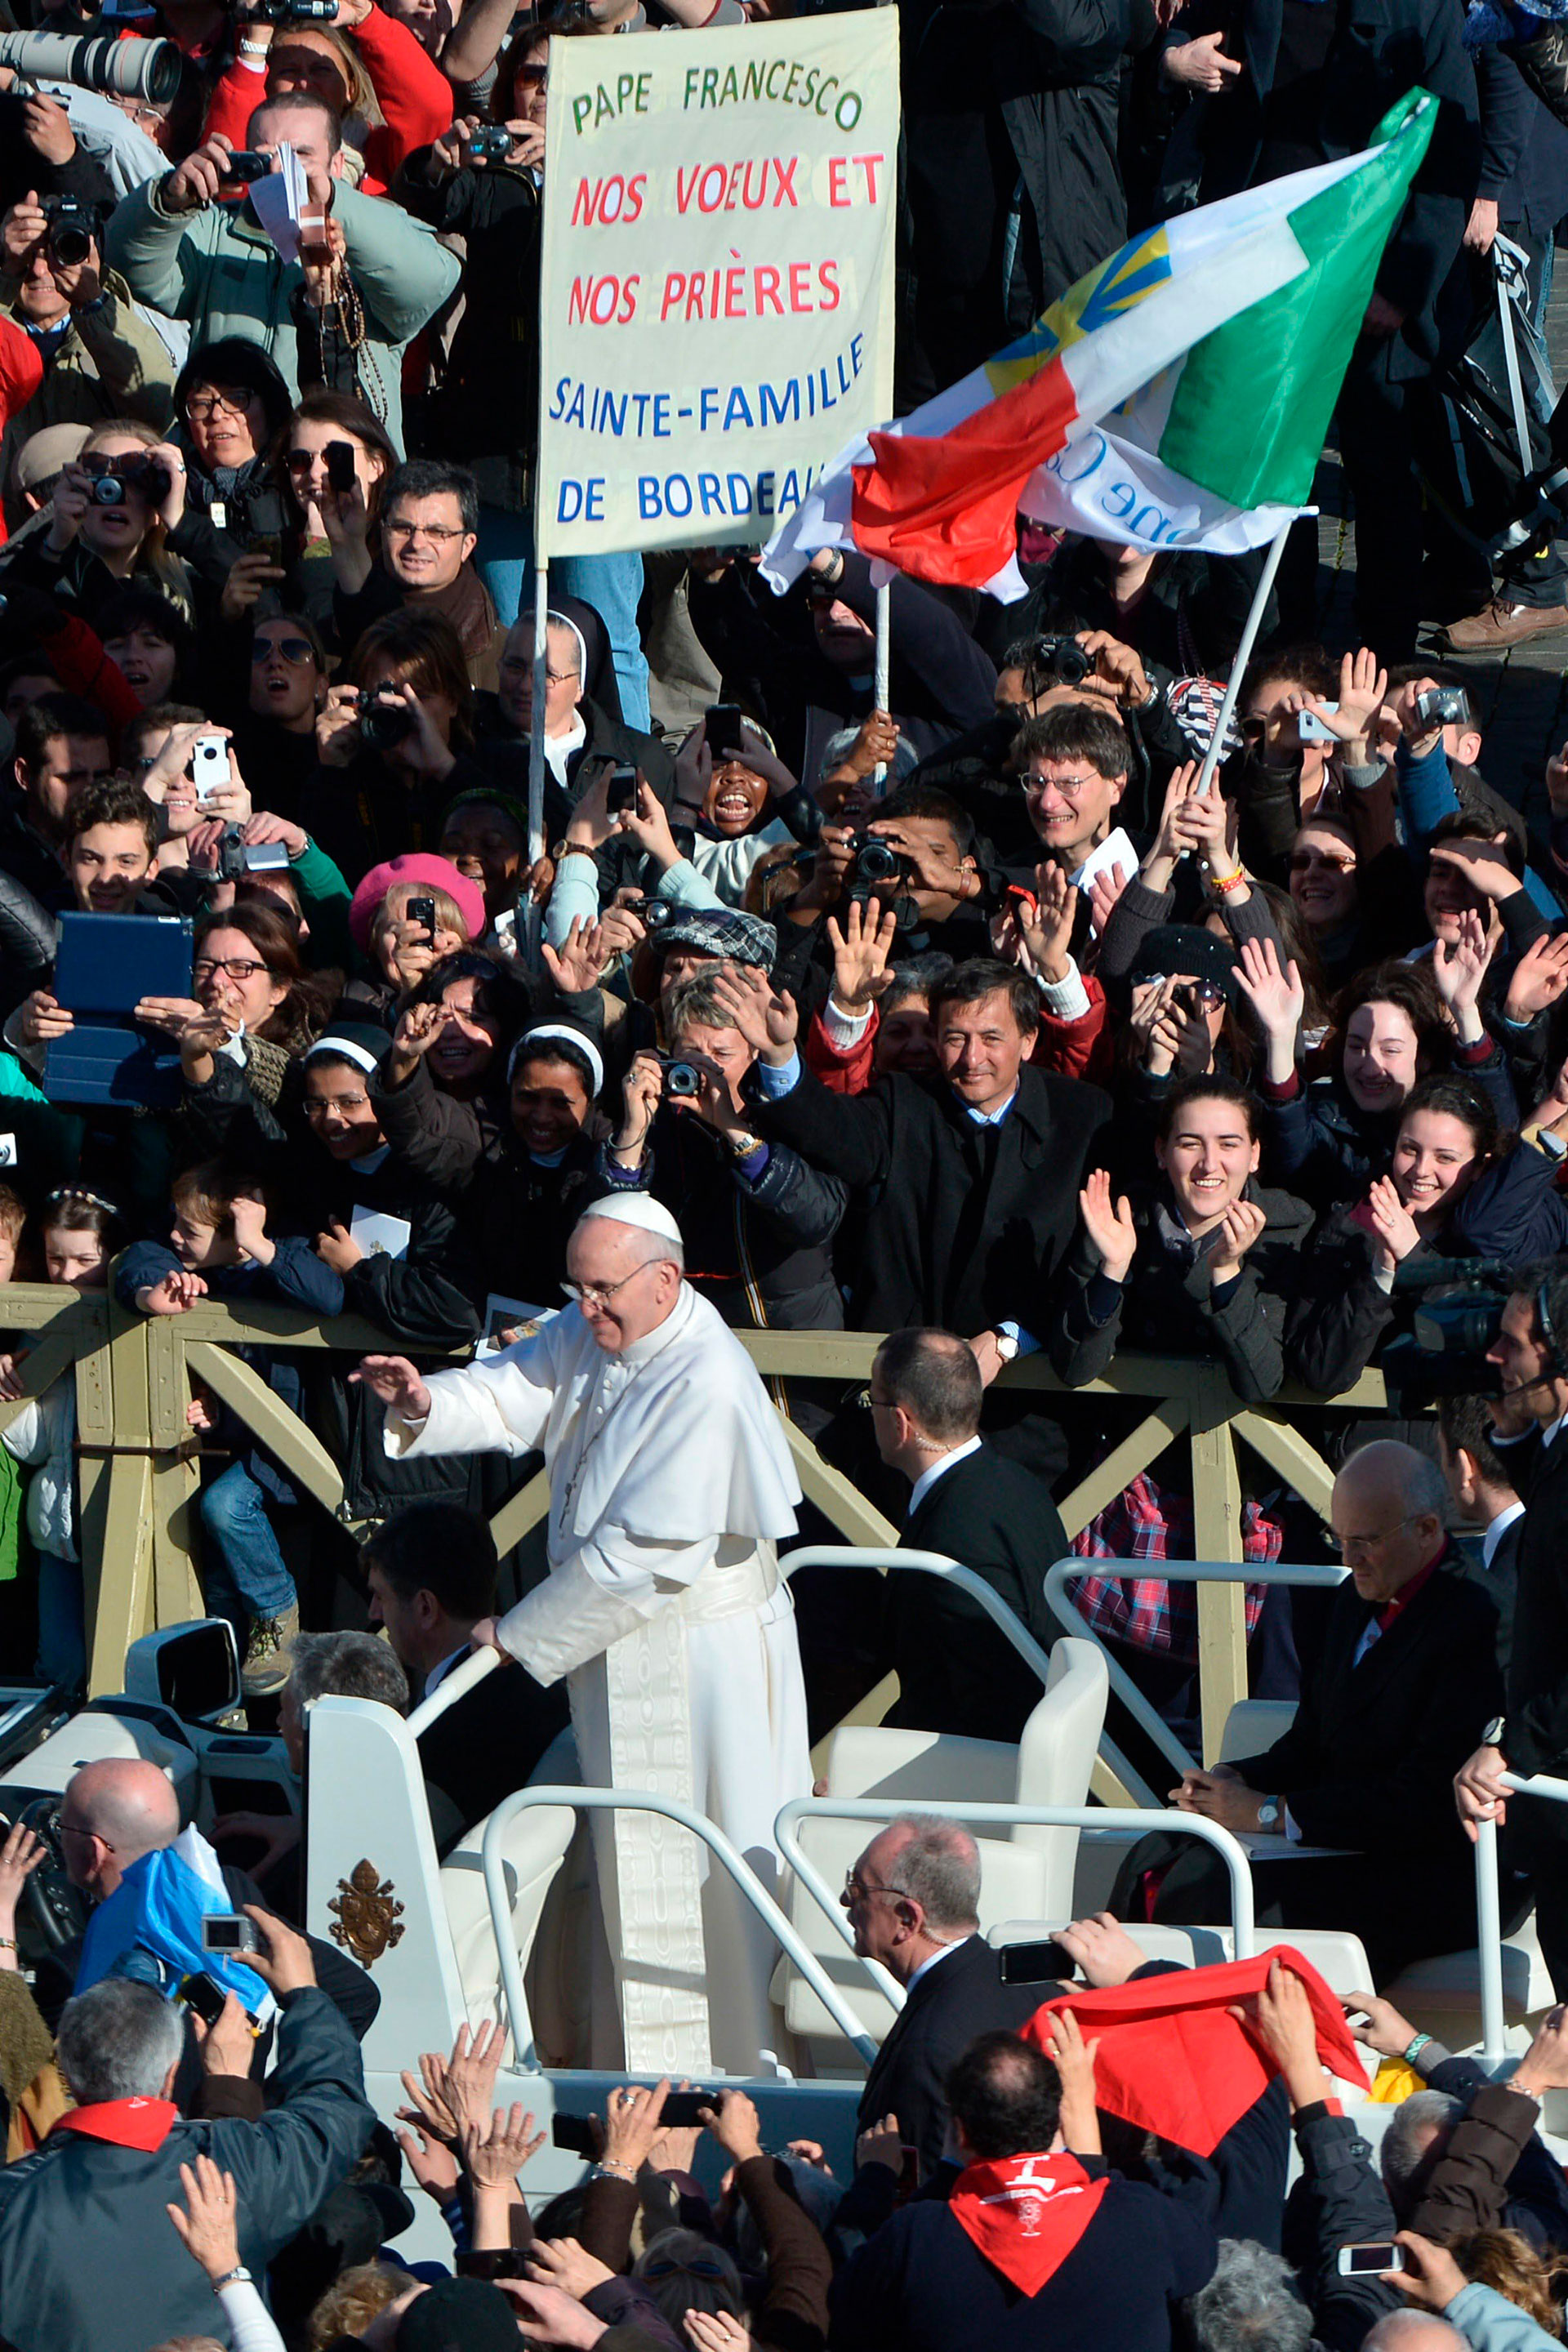 A los 76 años, se convirtió en el primer pontífice latinoamericano, y el primer Papa jesuita: la alegría y el orgullo de los argentinos sobrevoló aquella mañana, con muchas banderas celestes y blancas agitándose entre los peregrinos 